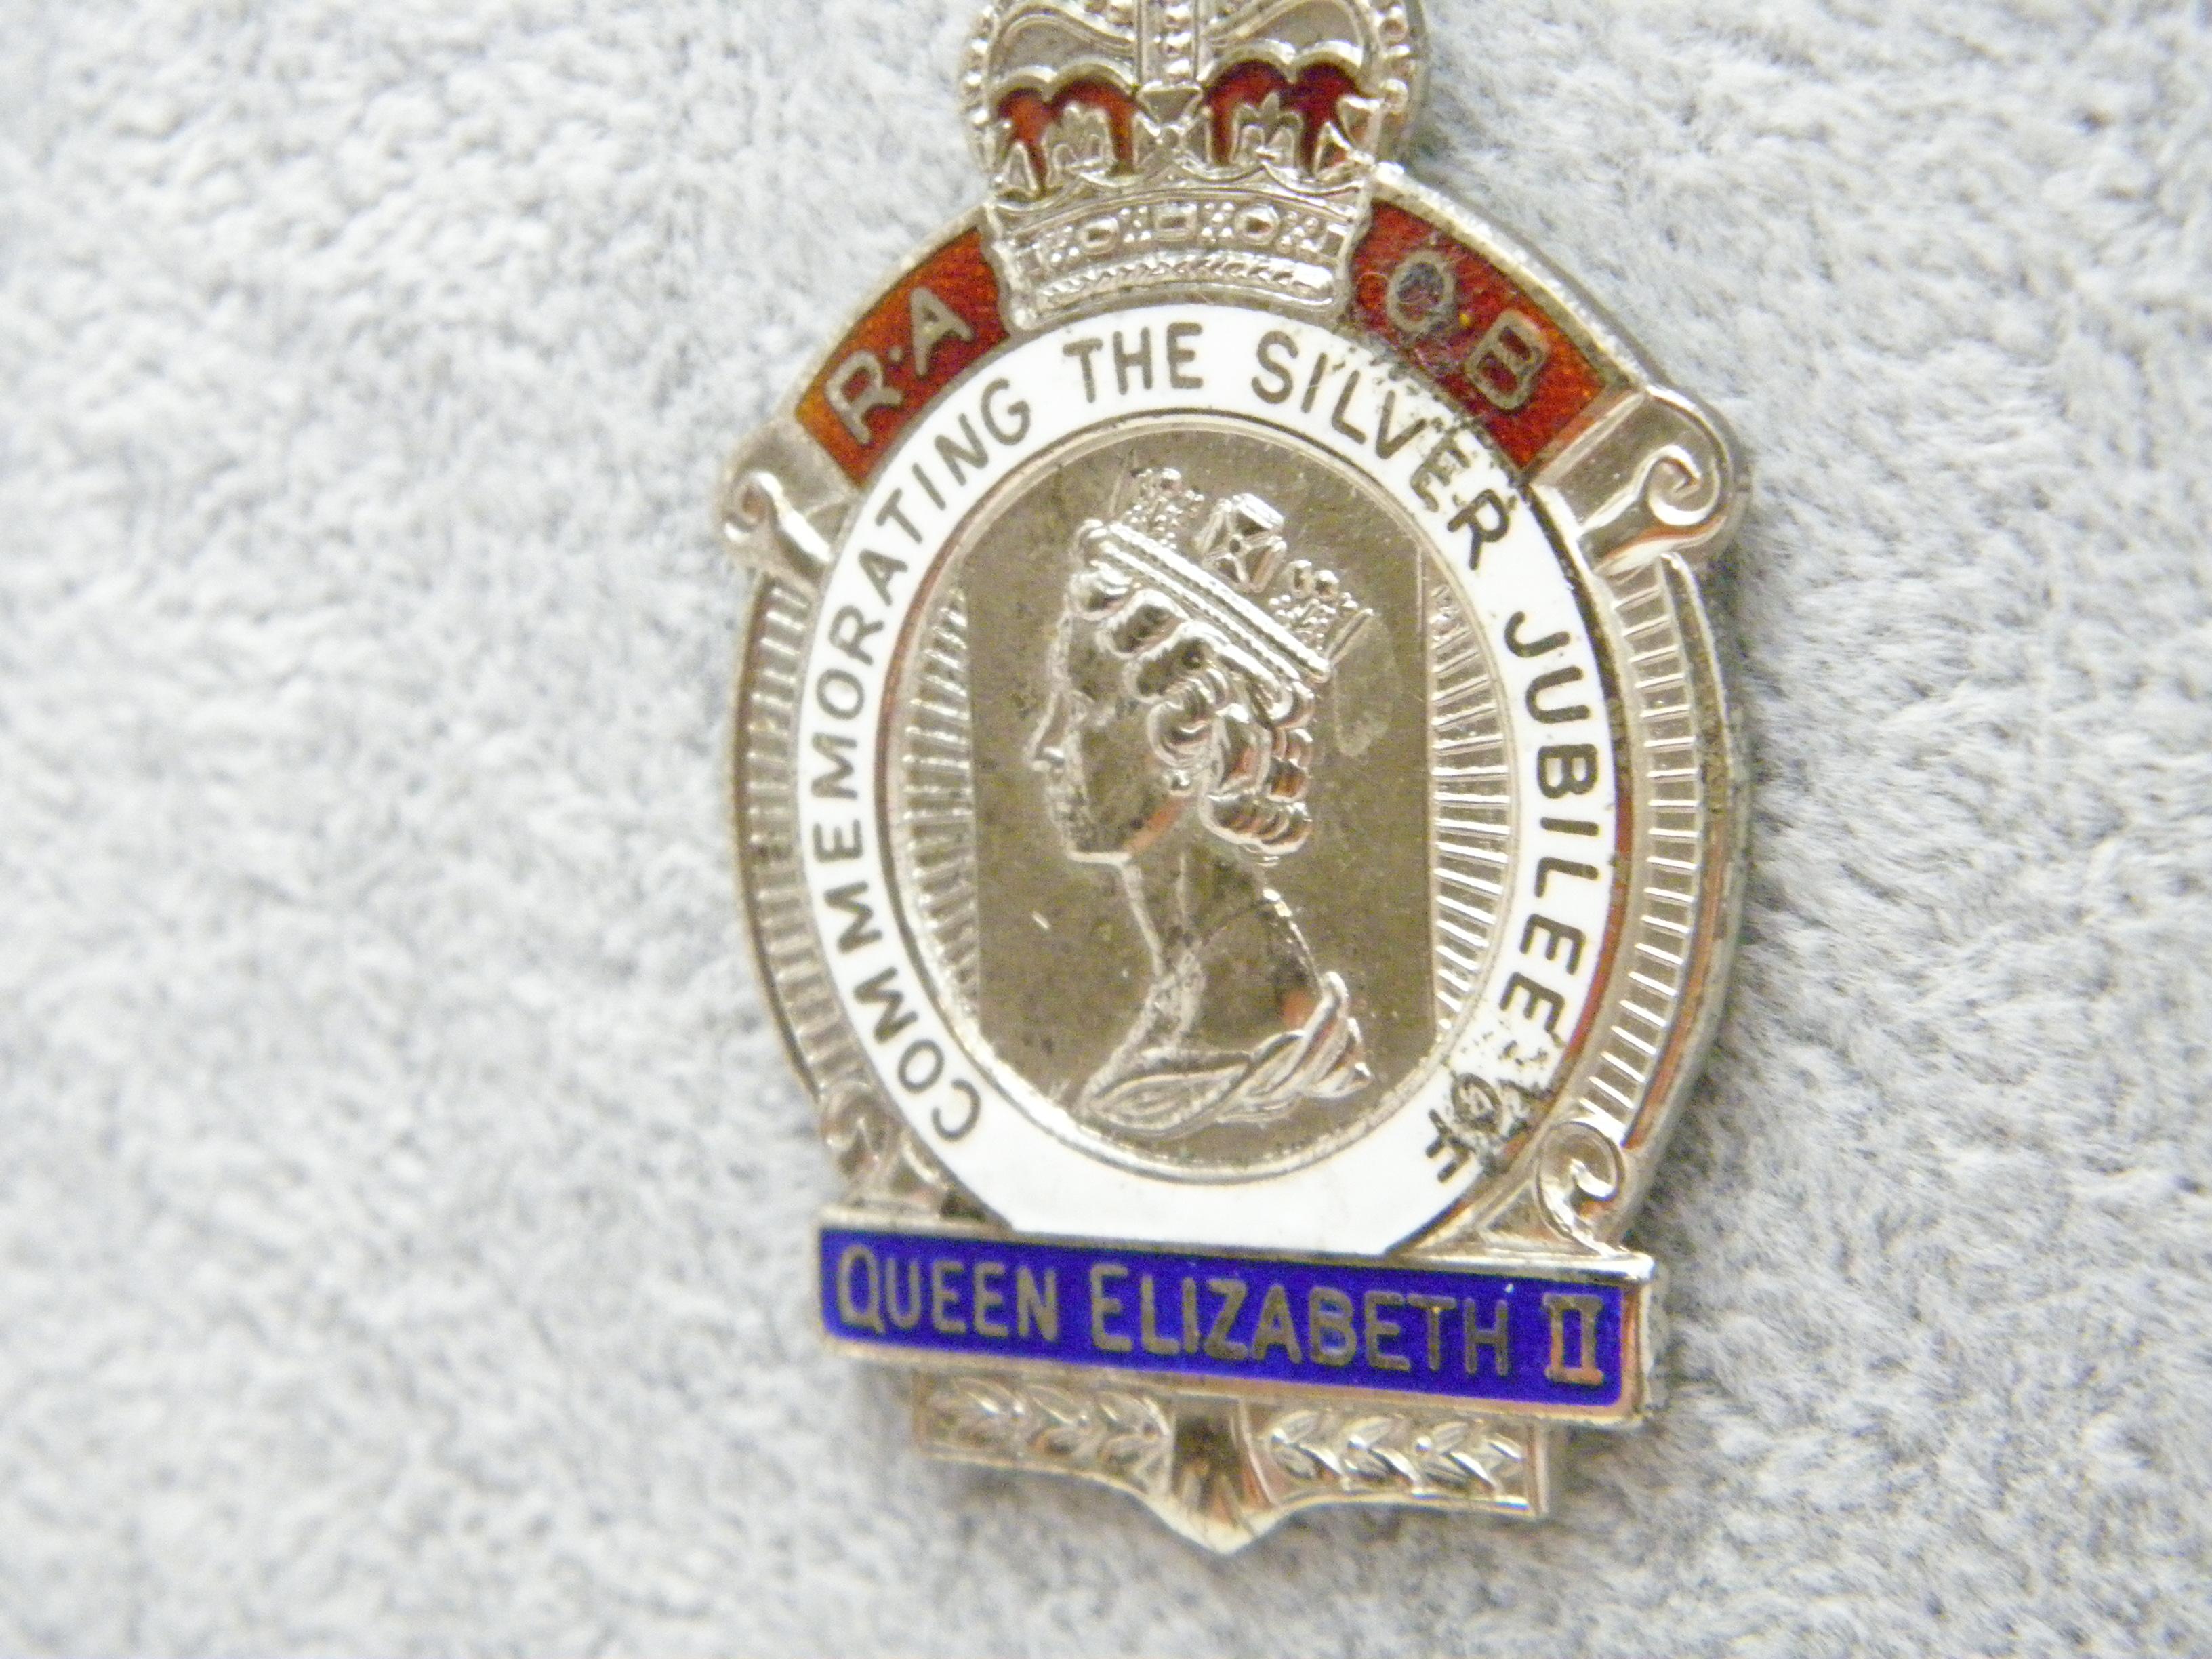 1977 silver jubilee pendant